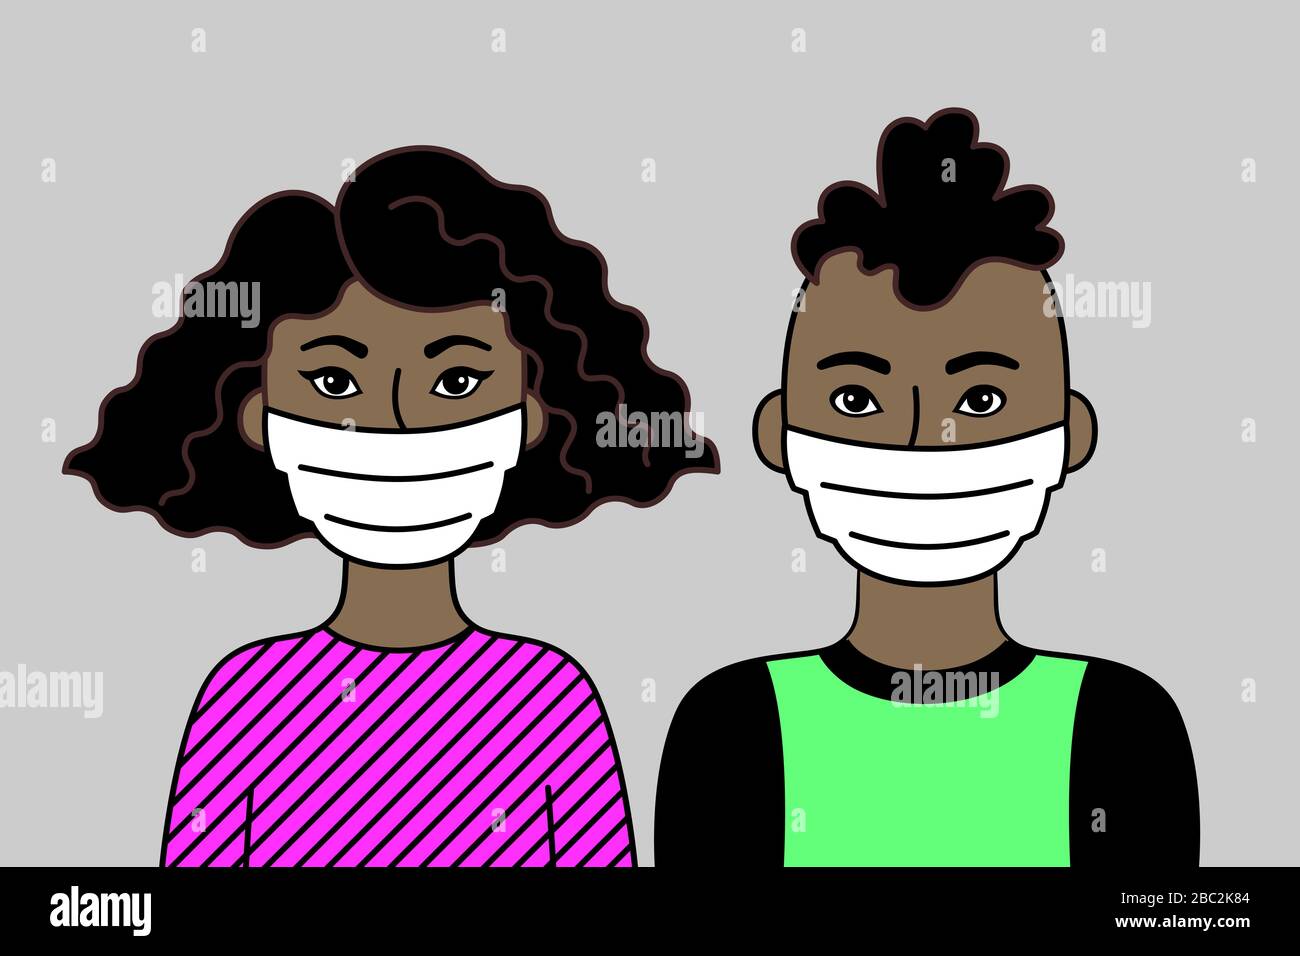 Schwarzes Paar Mit Gesichtsmasken. Zwei junge Erwachsene, Afrikaner oder Brasilianer. Atemschutzmasken Zur Vorbeugung Von Krankheiten, Grippe Und Luftverschmutzung. Stock Vektor